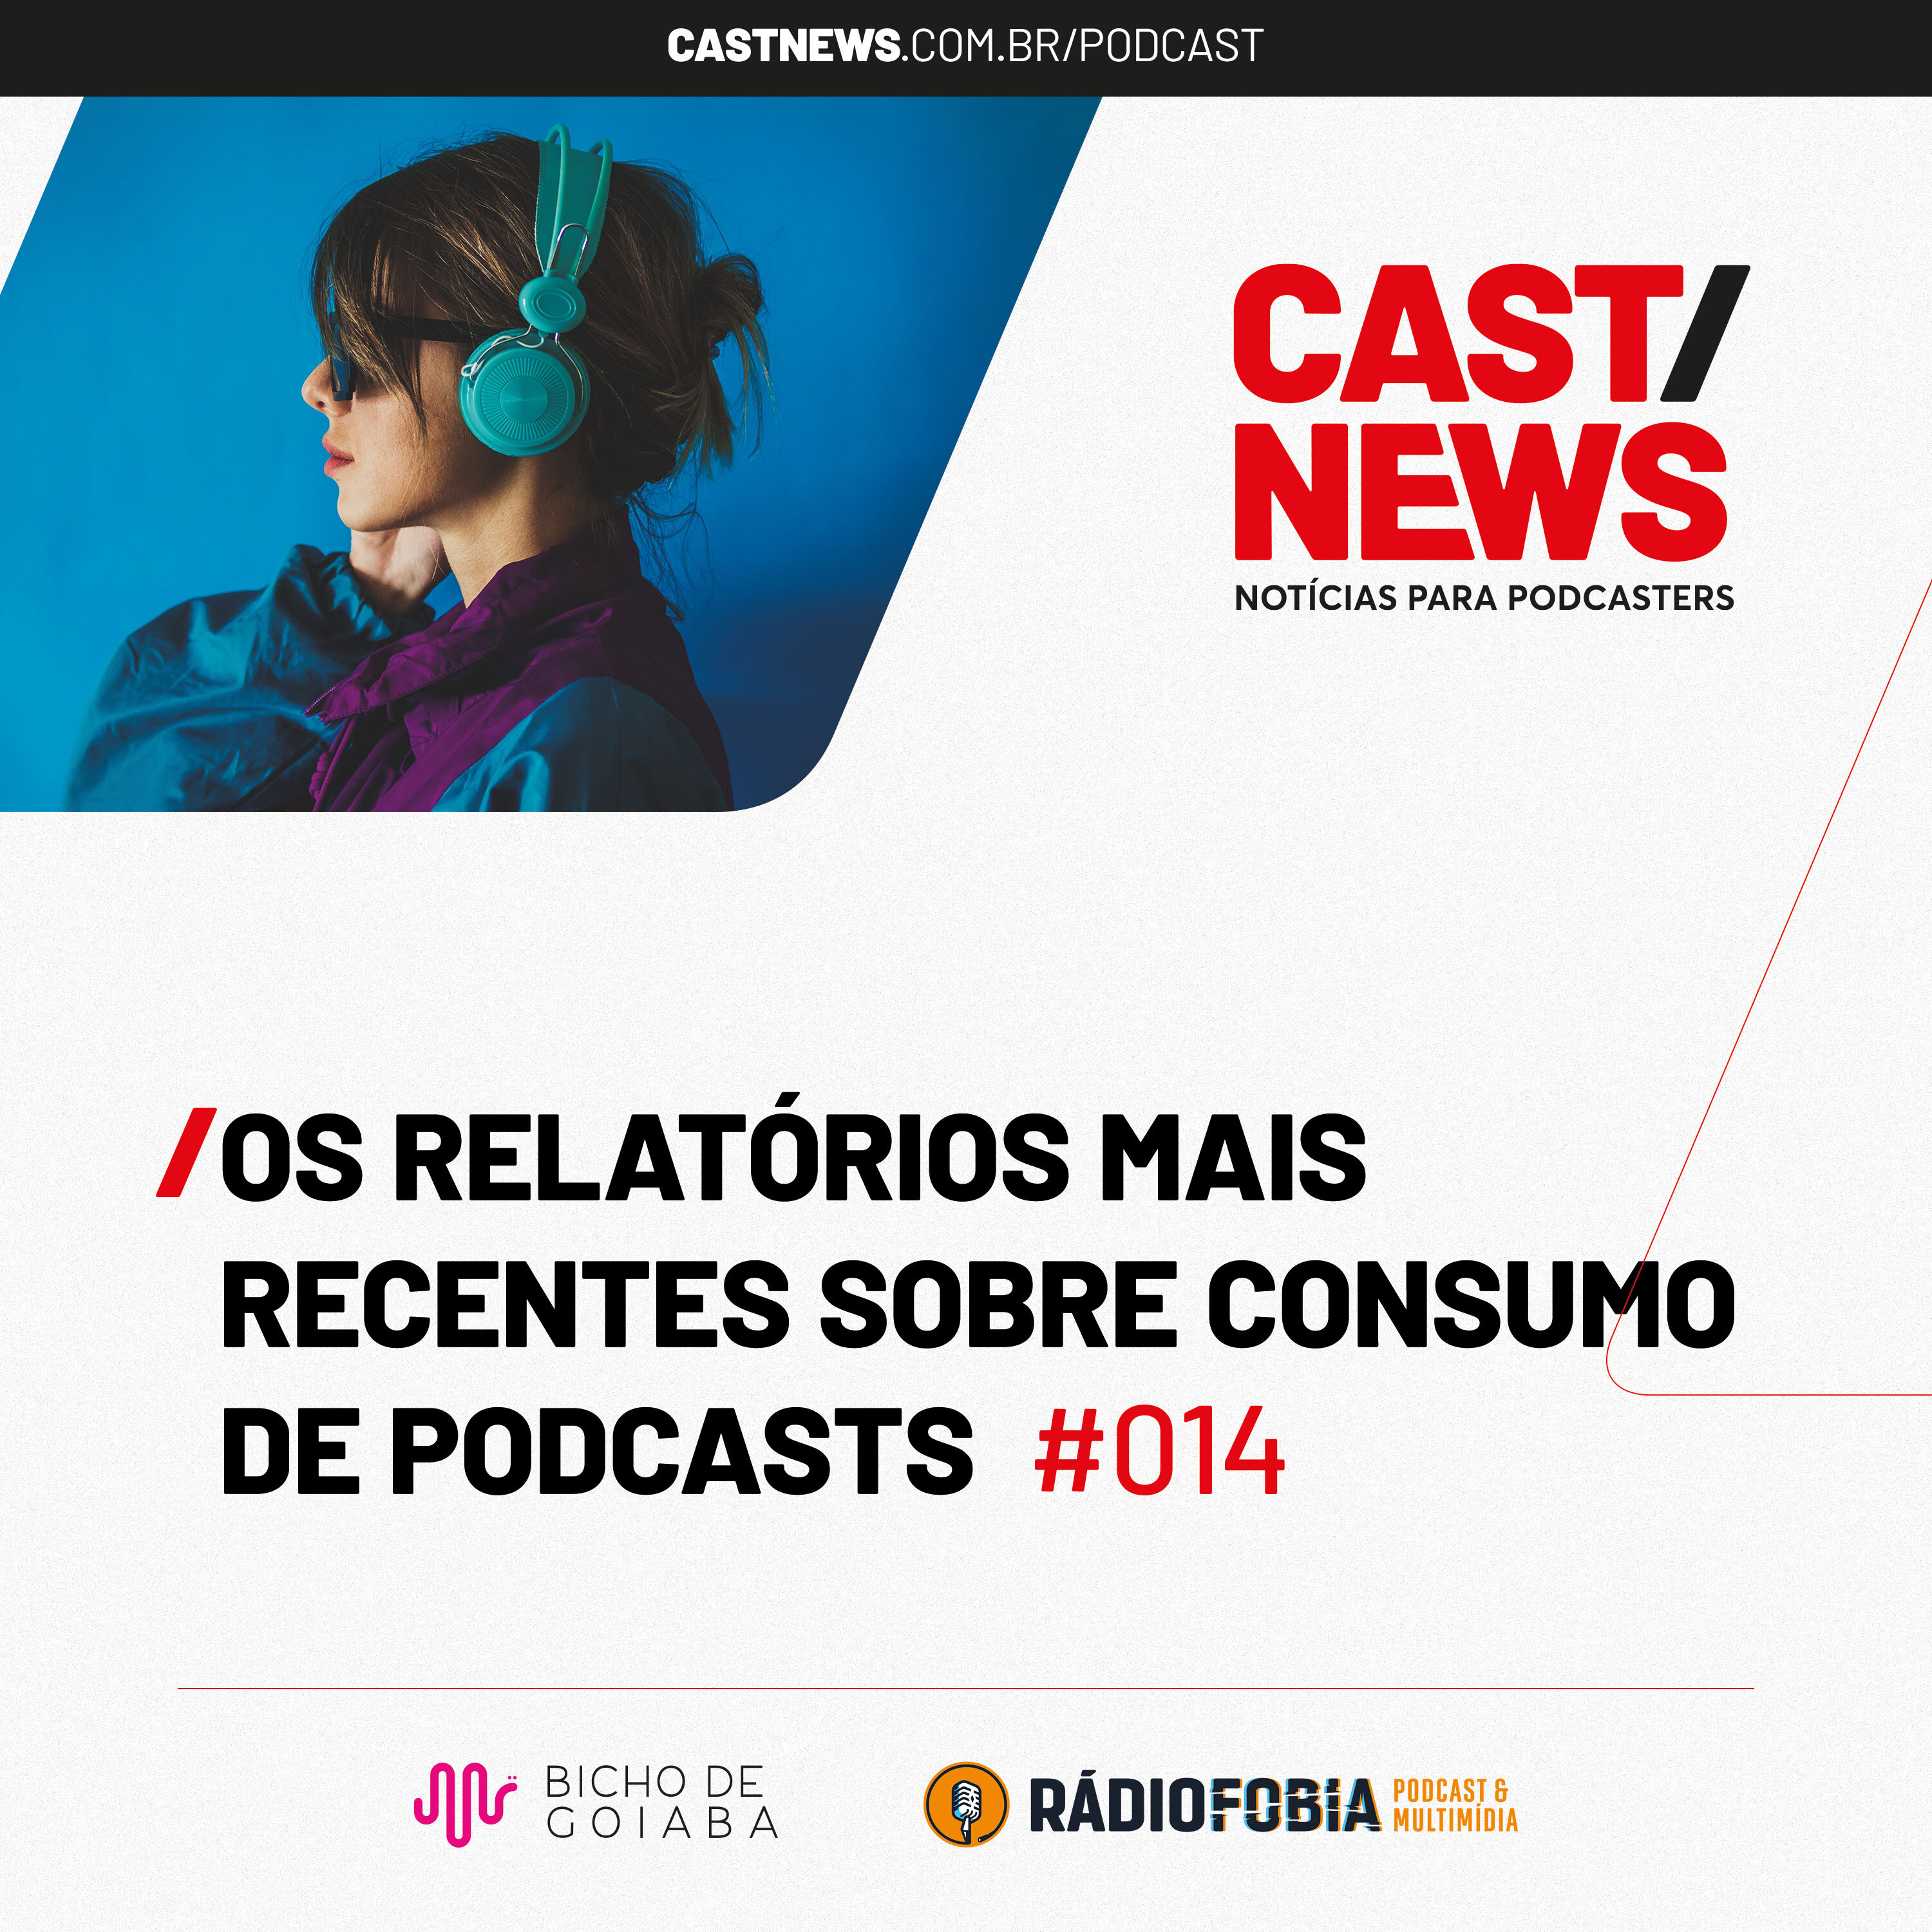 CASTNEWS #014 - Os relatórios mais recentes sobre consumo de podcasts